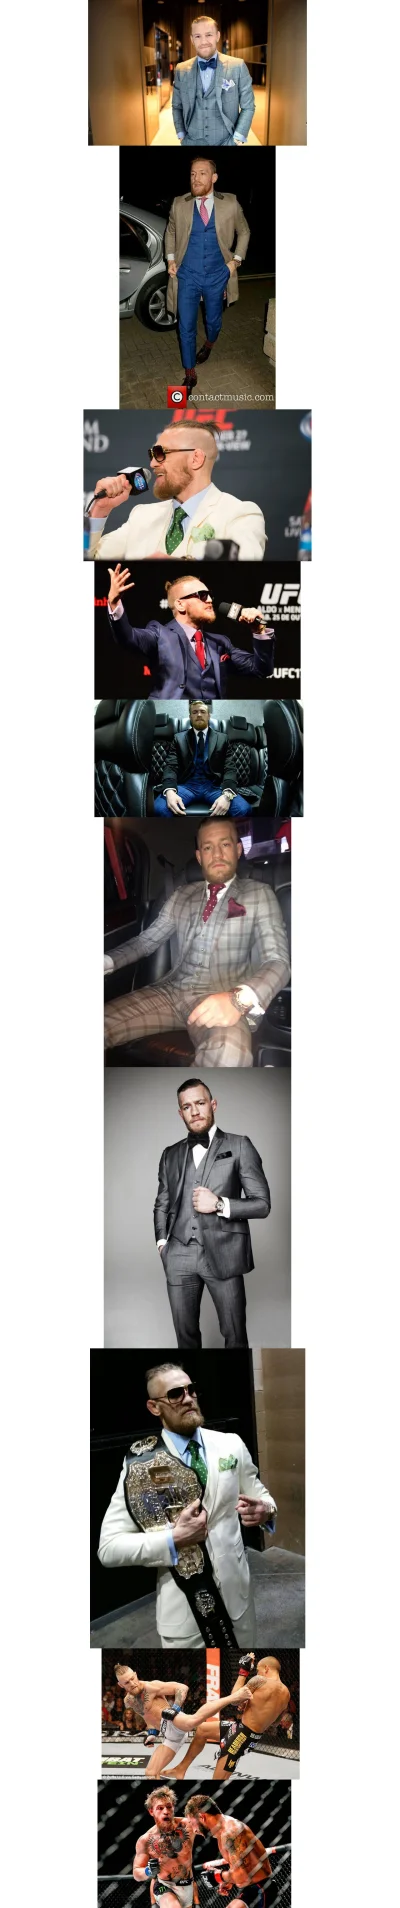 dGustator - Conor McGregor

Czyli doskonale ubrany prawdziwy mężczyzna :) 

Można...